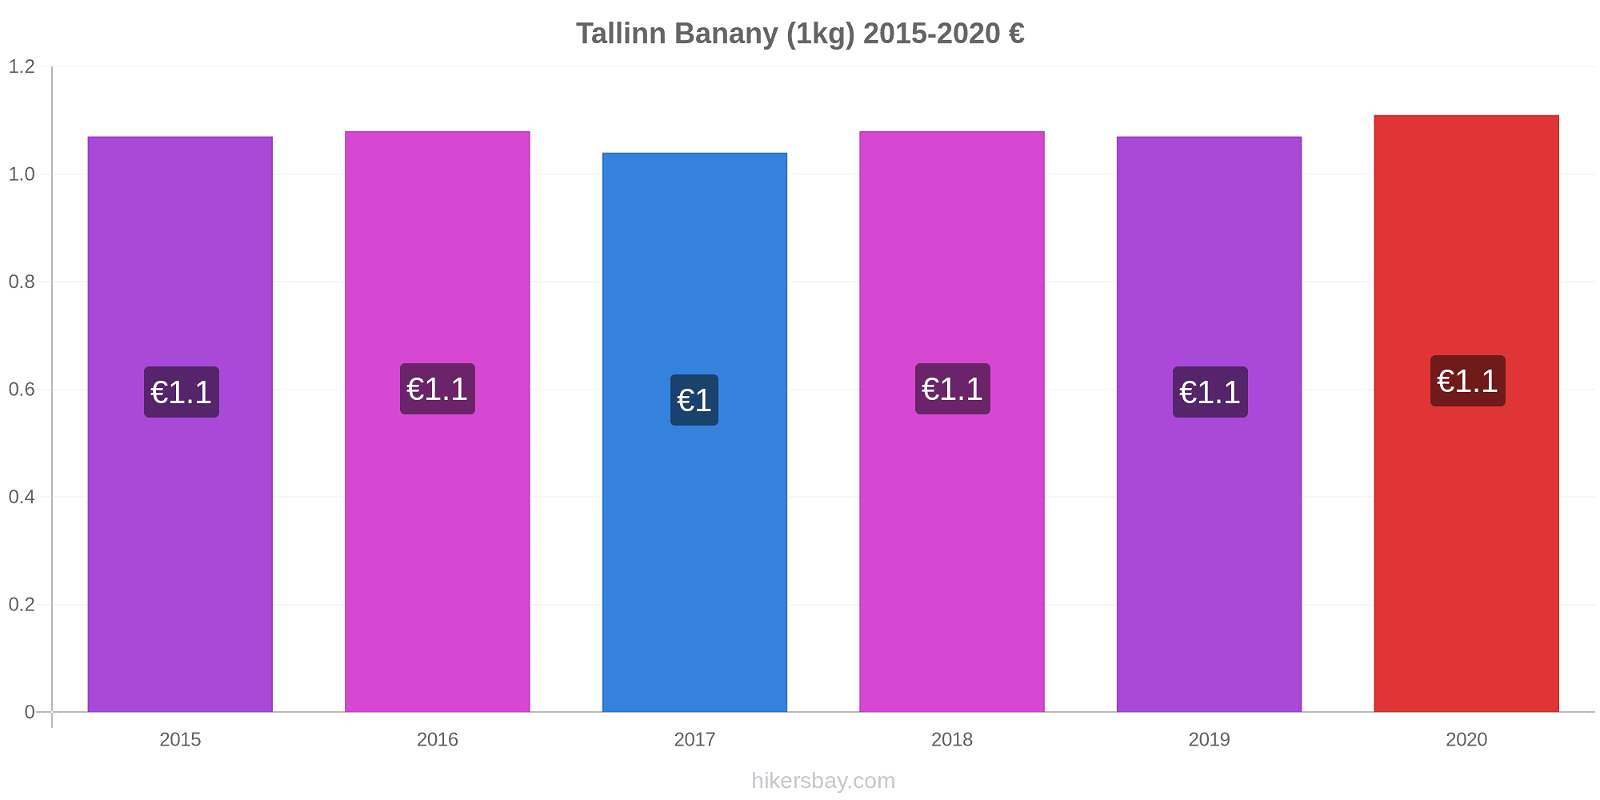 Tallinn zmiany cen Banany (1kg) hikersbay.com